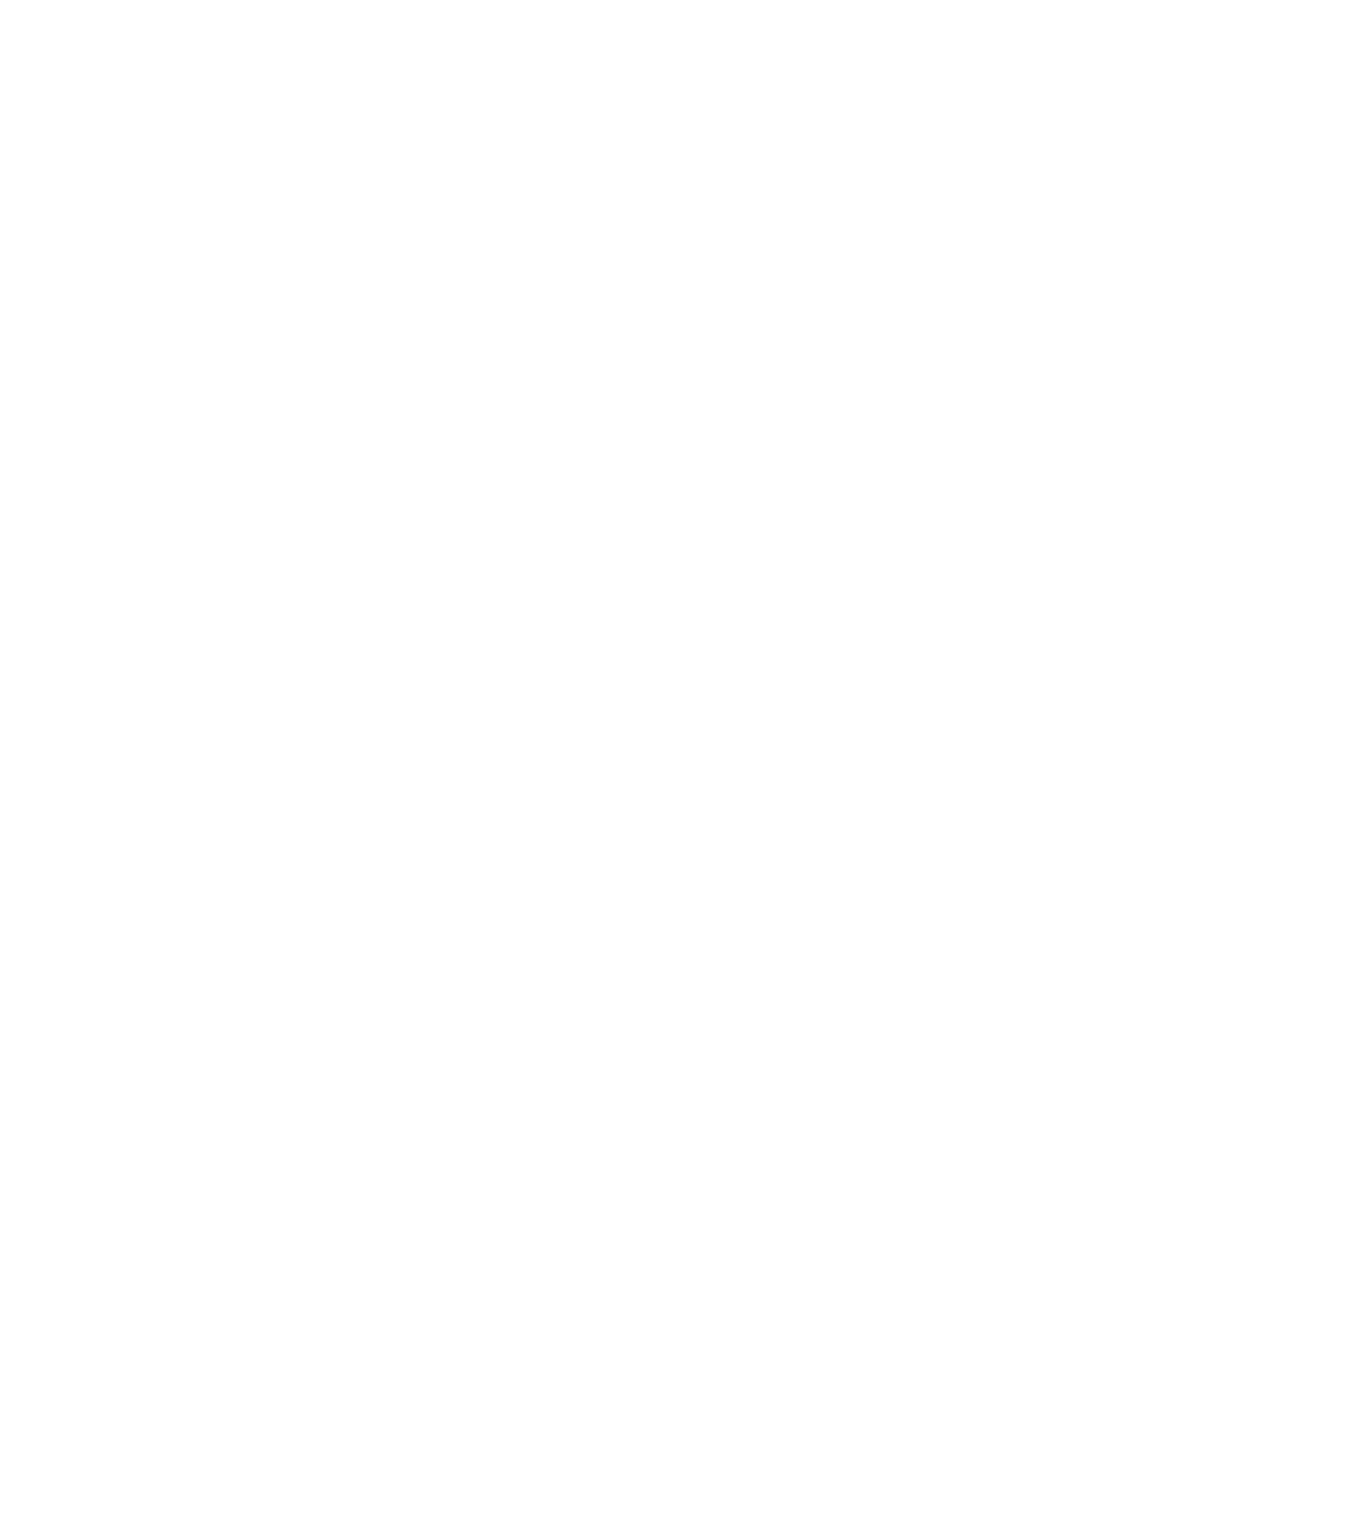 Clicks Group logo for dark backgrounds (transparent PNG)